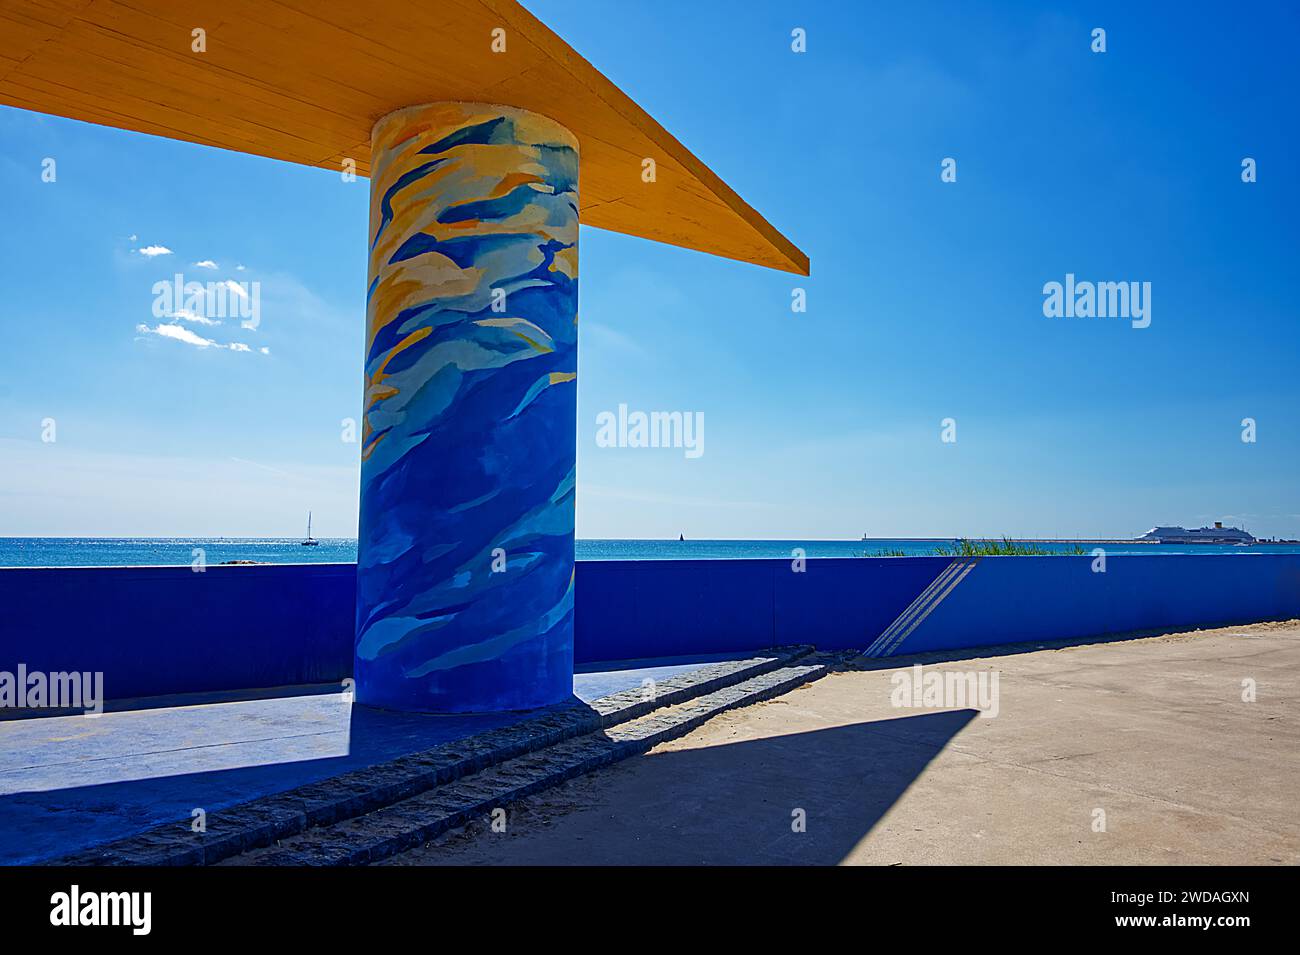 Wunderschöne farbenfrohe Betonkonstruktion für ein Baldachin in der Nähe des blauen Meeres unter einem klaren blauen Himmel Stockfoto